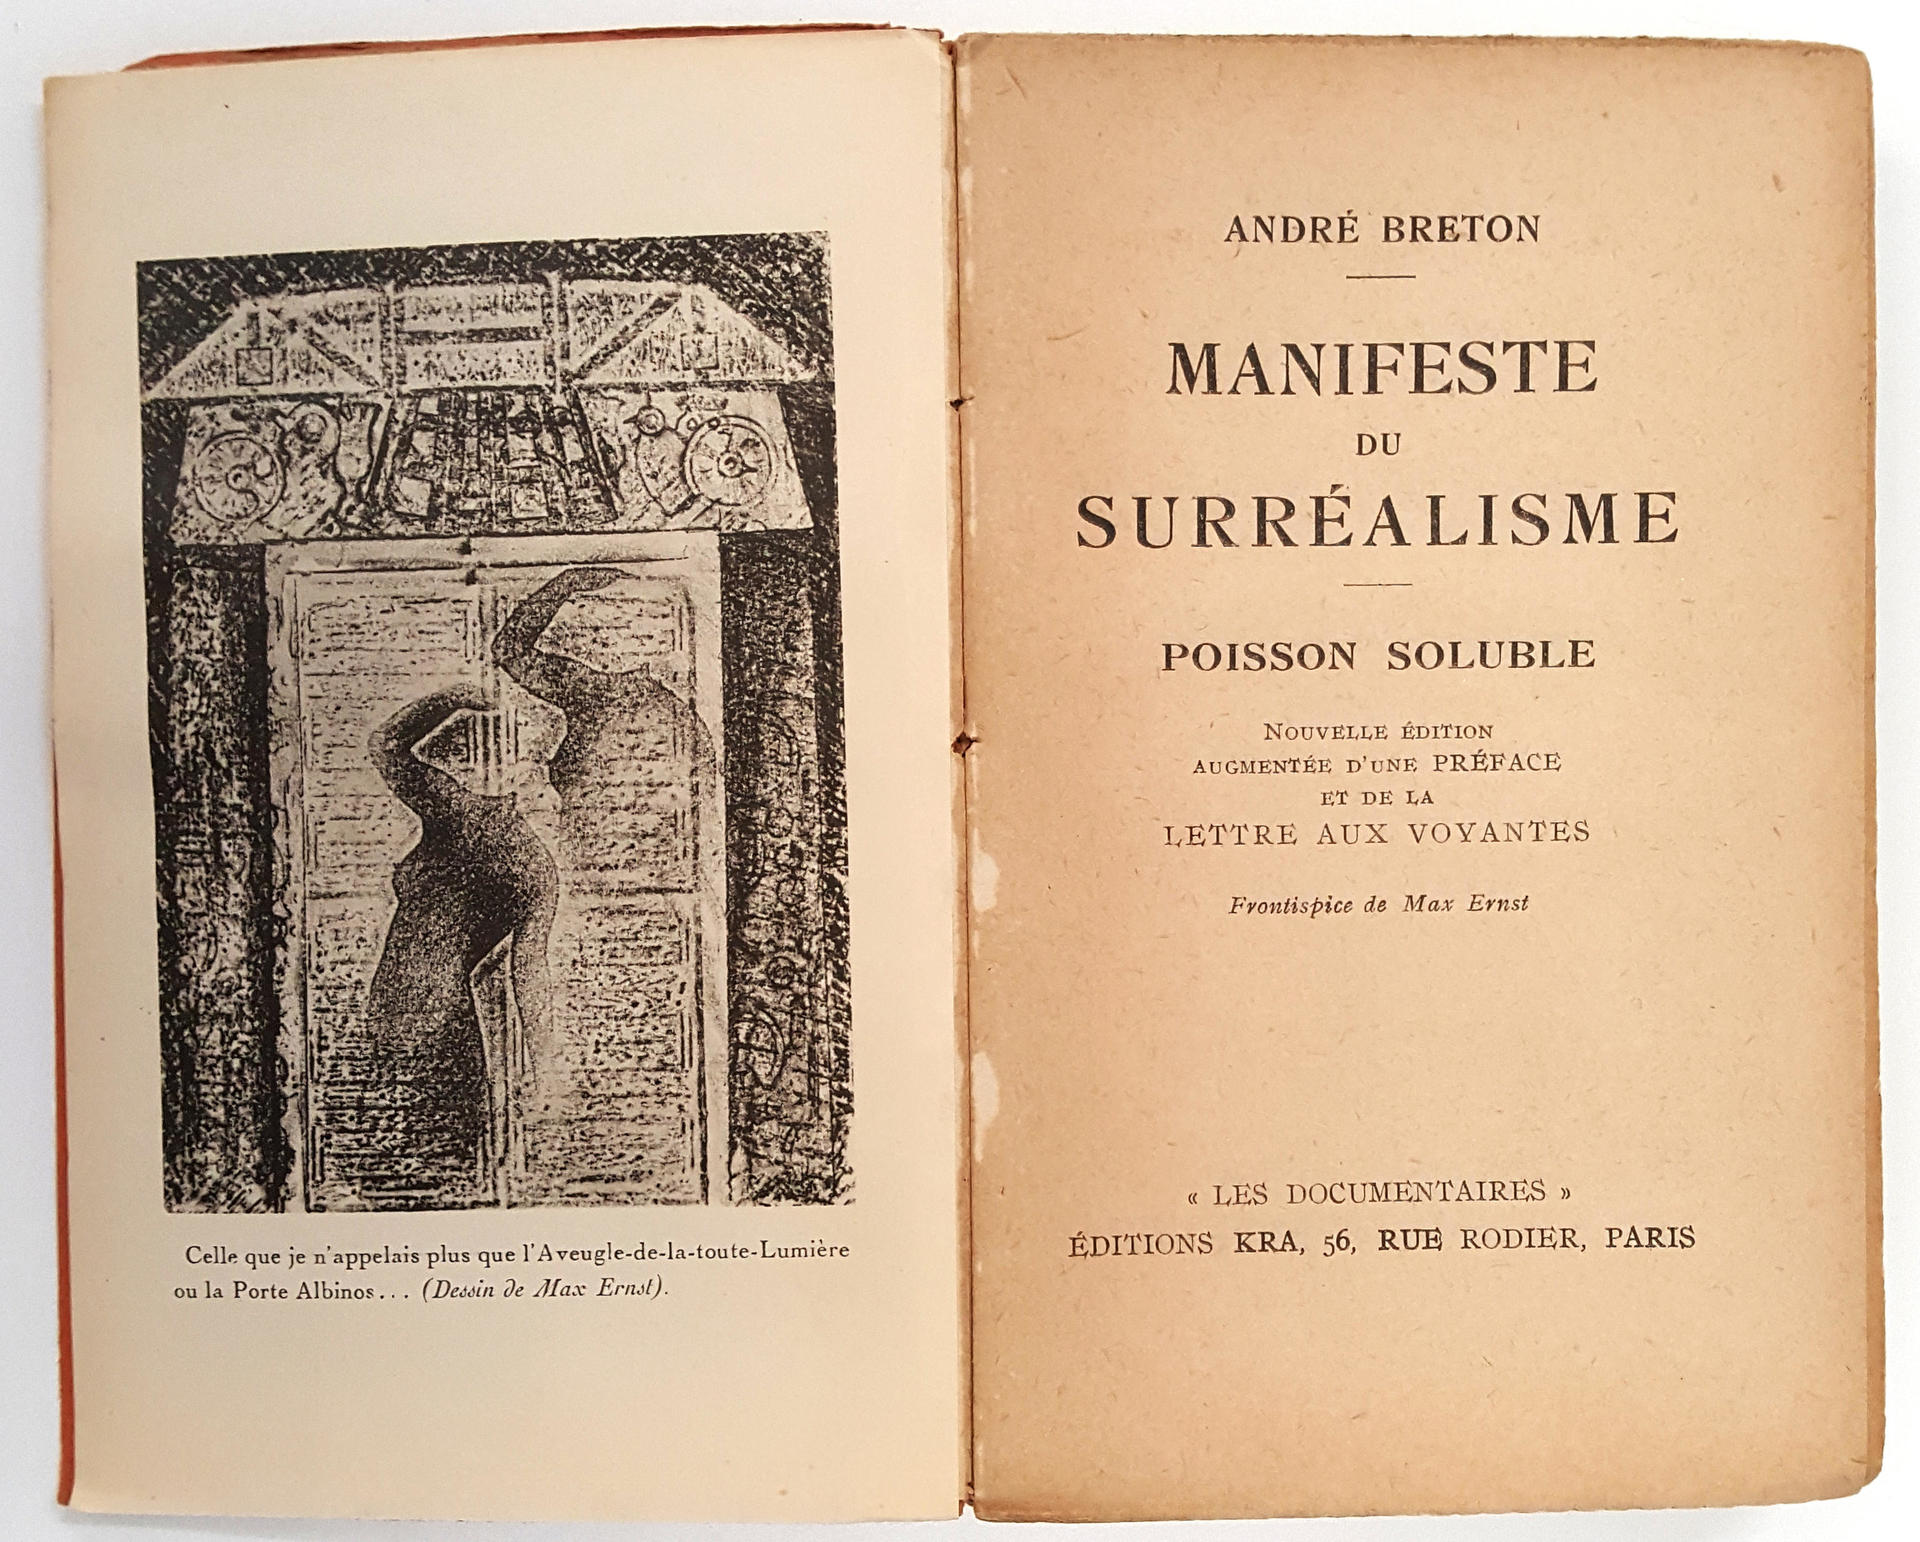 Manifeste du Surrealisme [and] Poisson Soluble, Lettre aux voyantes, by Andre Breton, Paris, Simon Kra, 1929